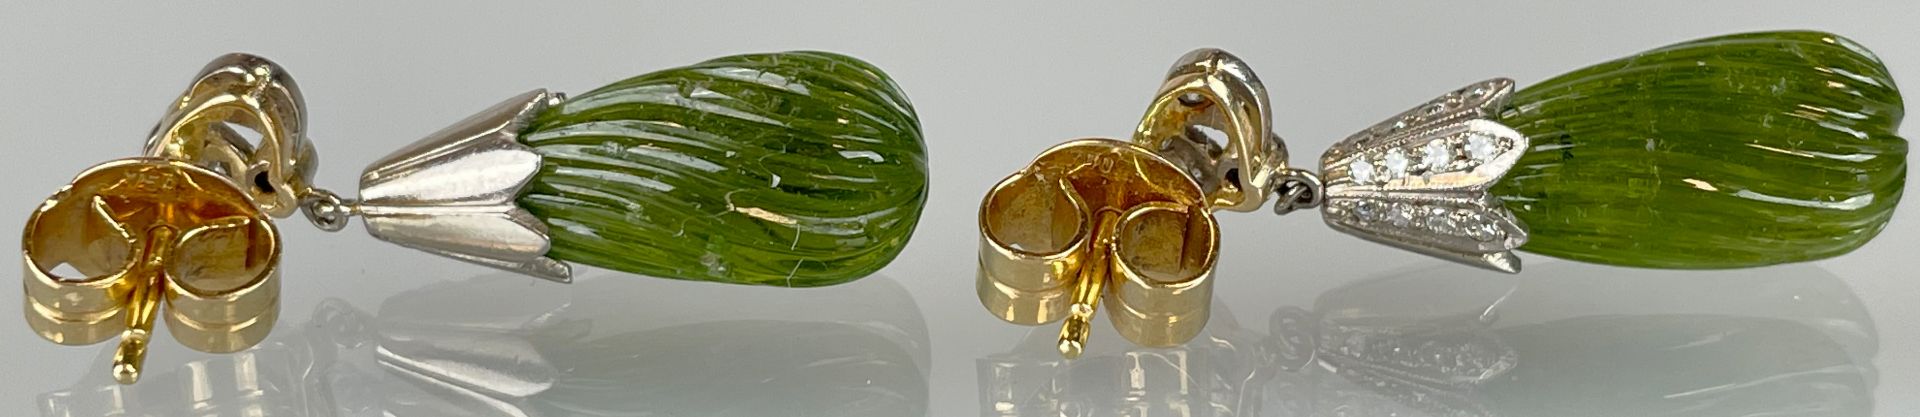 Paar Ohrstecker 750 Weißgold / Gelbgold mit Brillantbesatz und grünen Farbsteinen. - Bild 3 aus 9